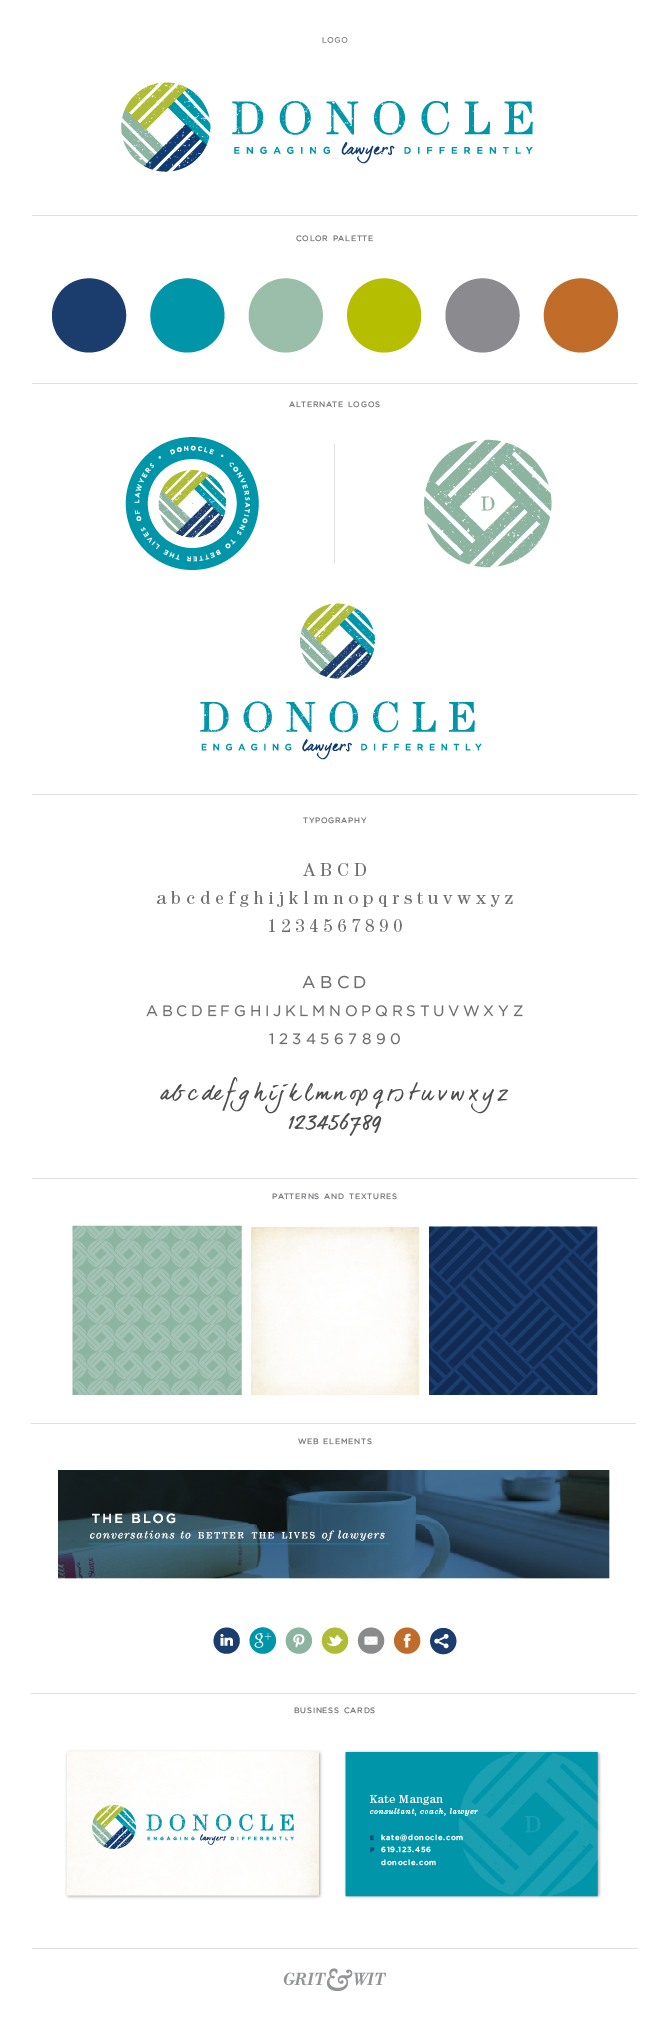 Donocle_Branding_Portfolio-01